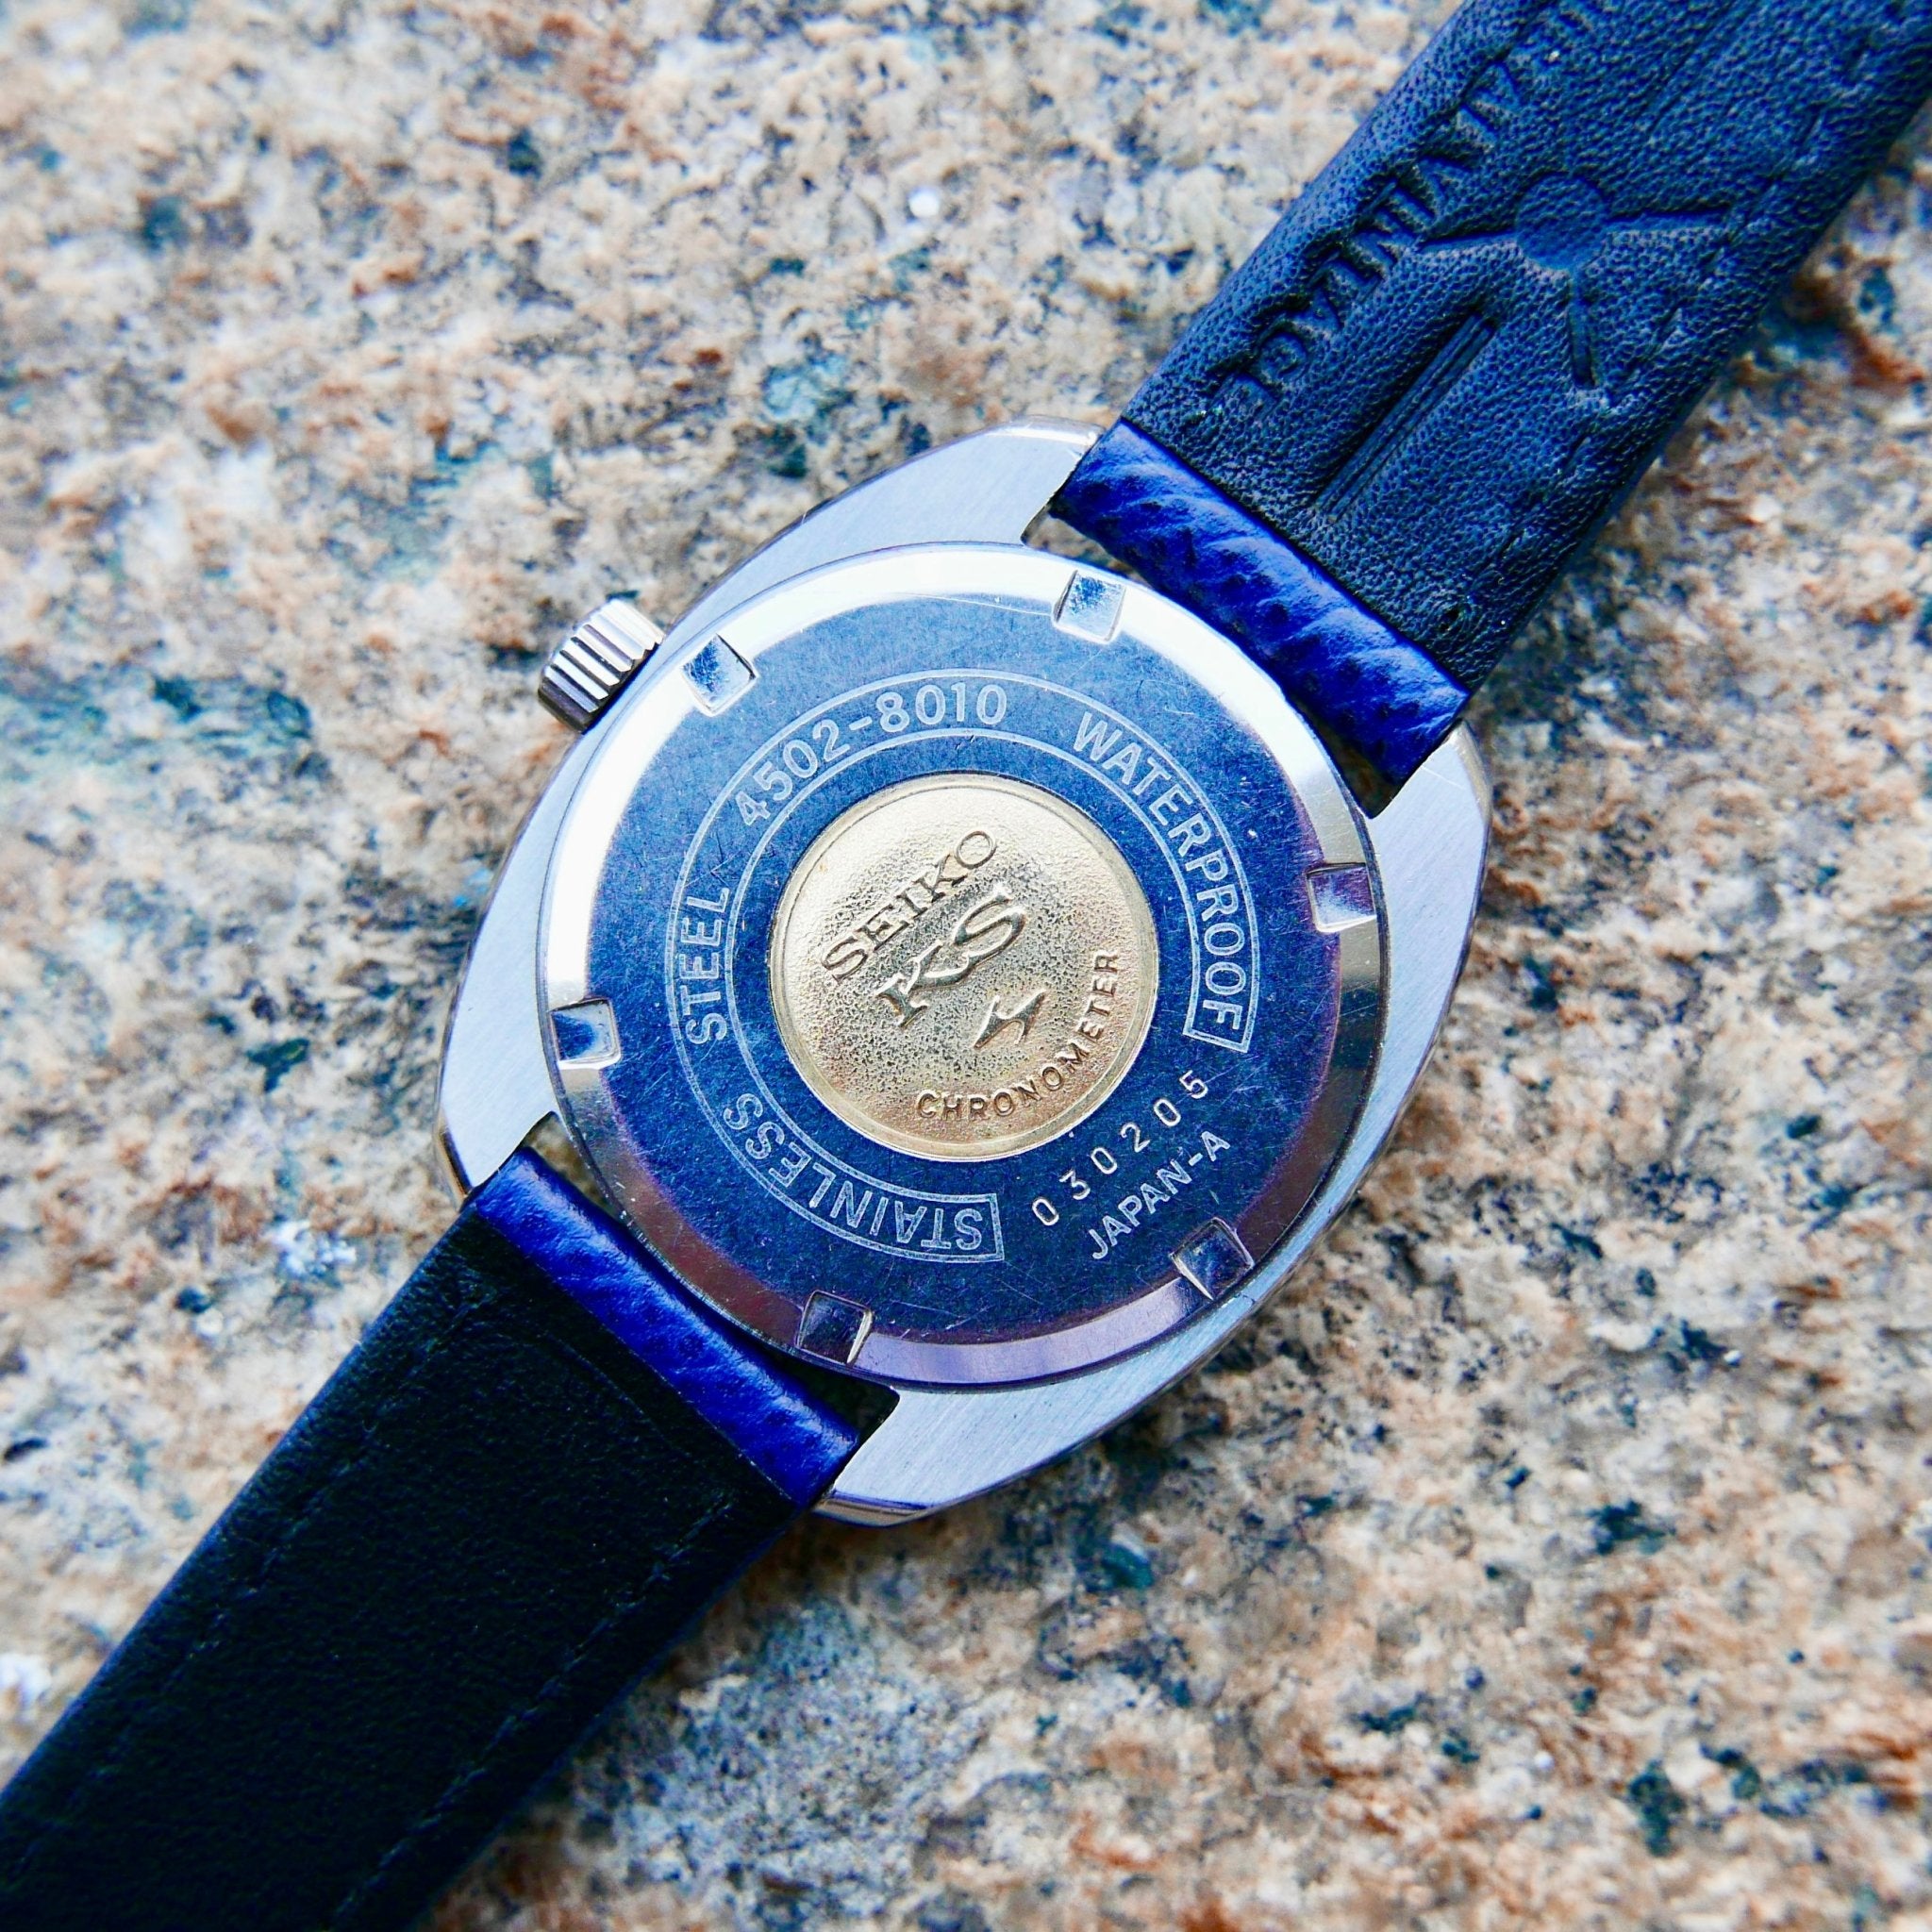 Vintage Watch | King Seiko Chronometer 5626 7040 (Blue Dial) (Close to NOS) - Samurai Vintage Co.